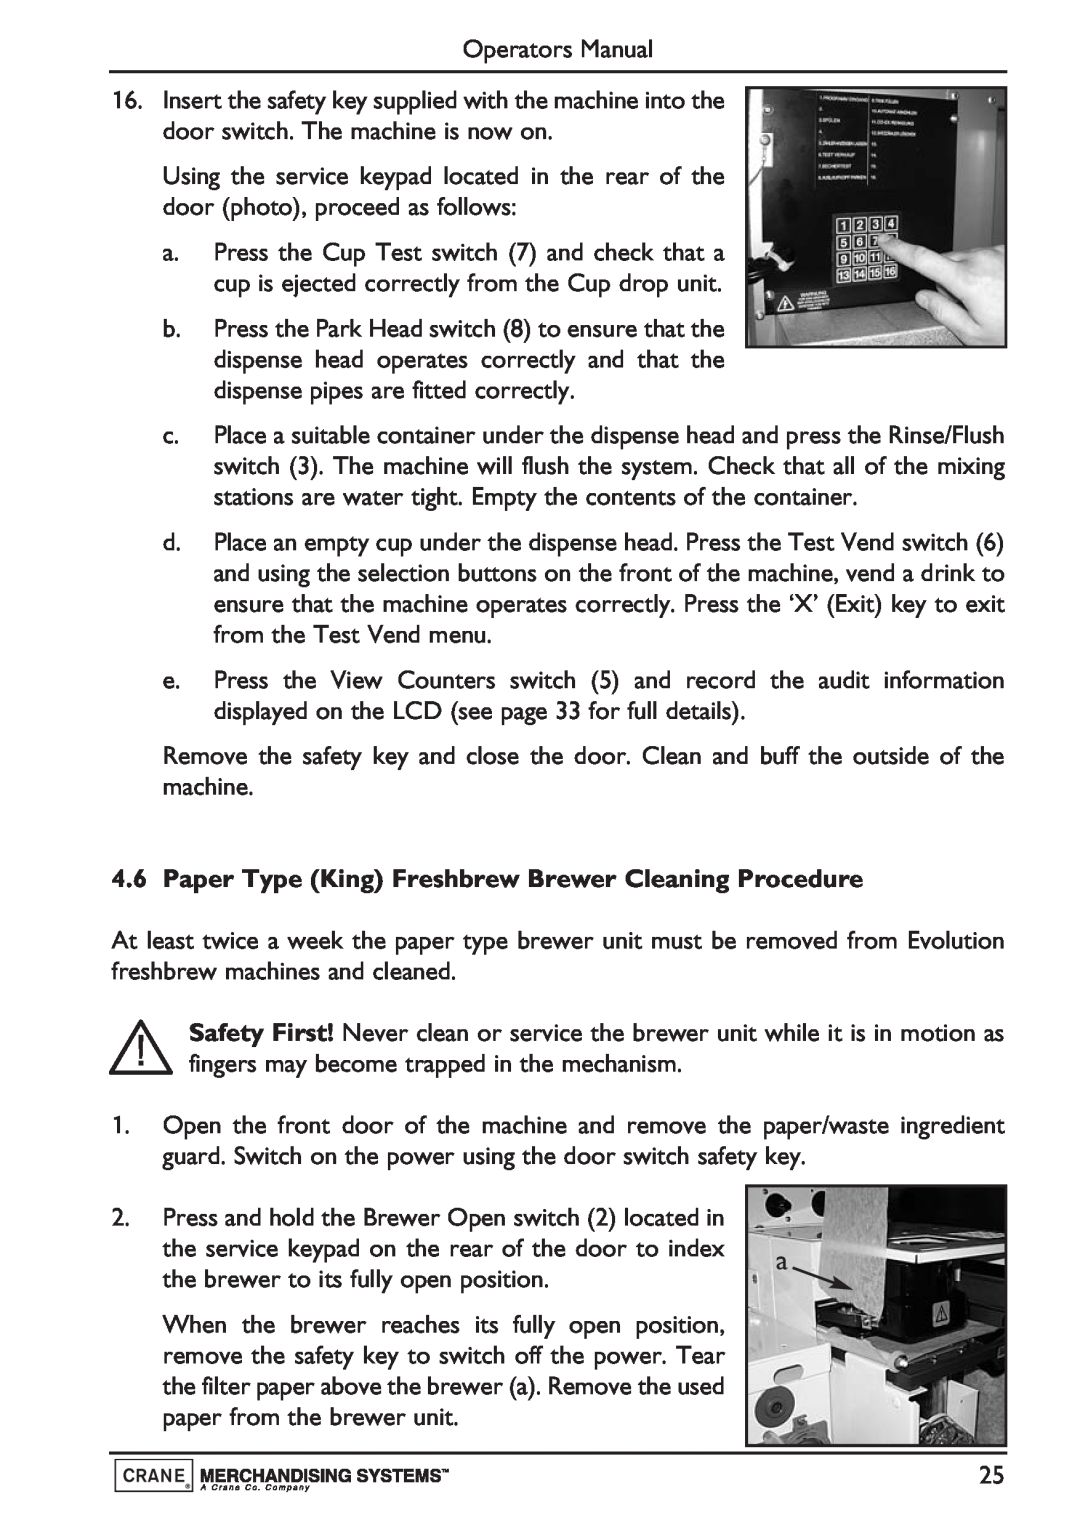 Evolution Technologies Instant, Freshbrew & Espresso (B2C) Machine Paper Type King Freshbrew Brewer Cleaning Procedure 